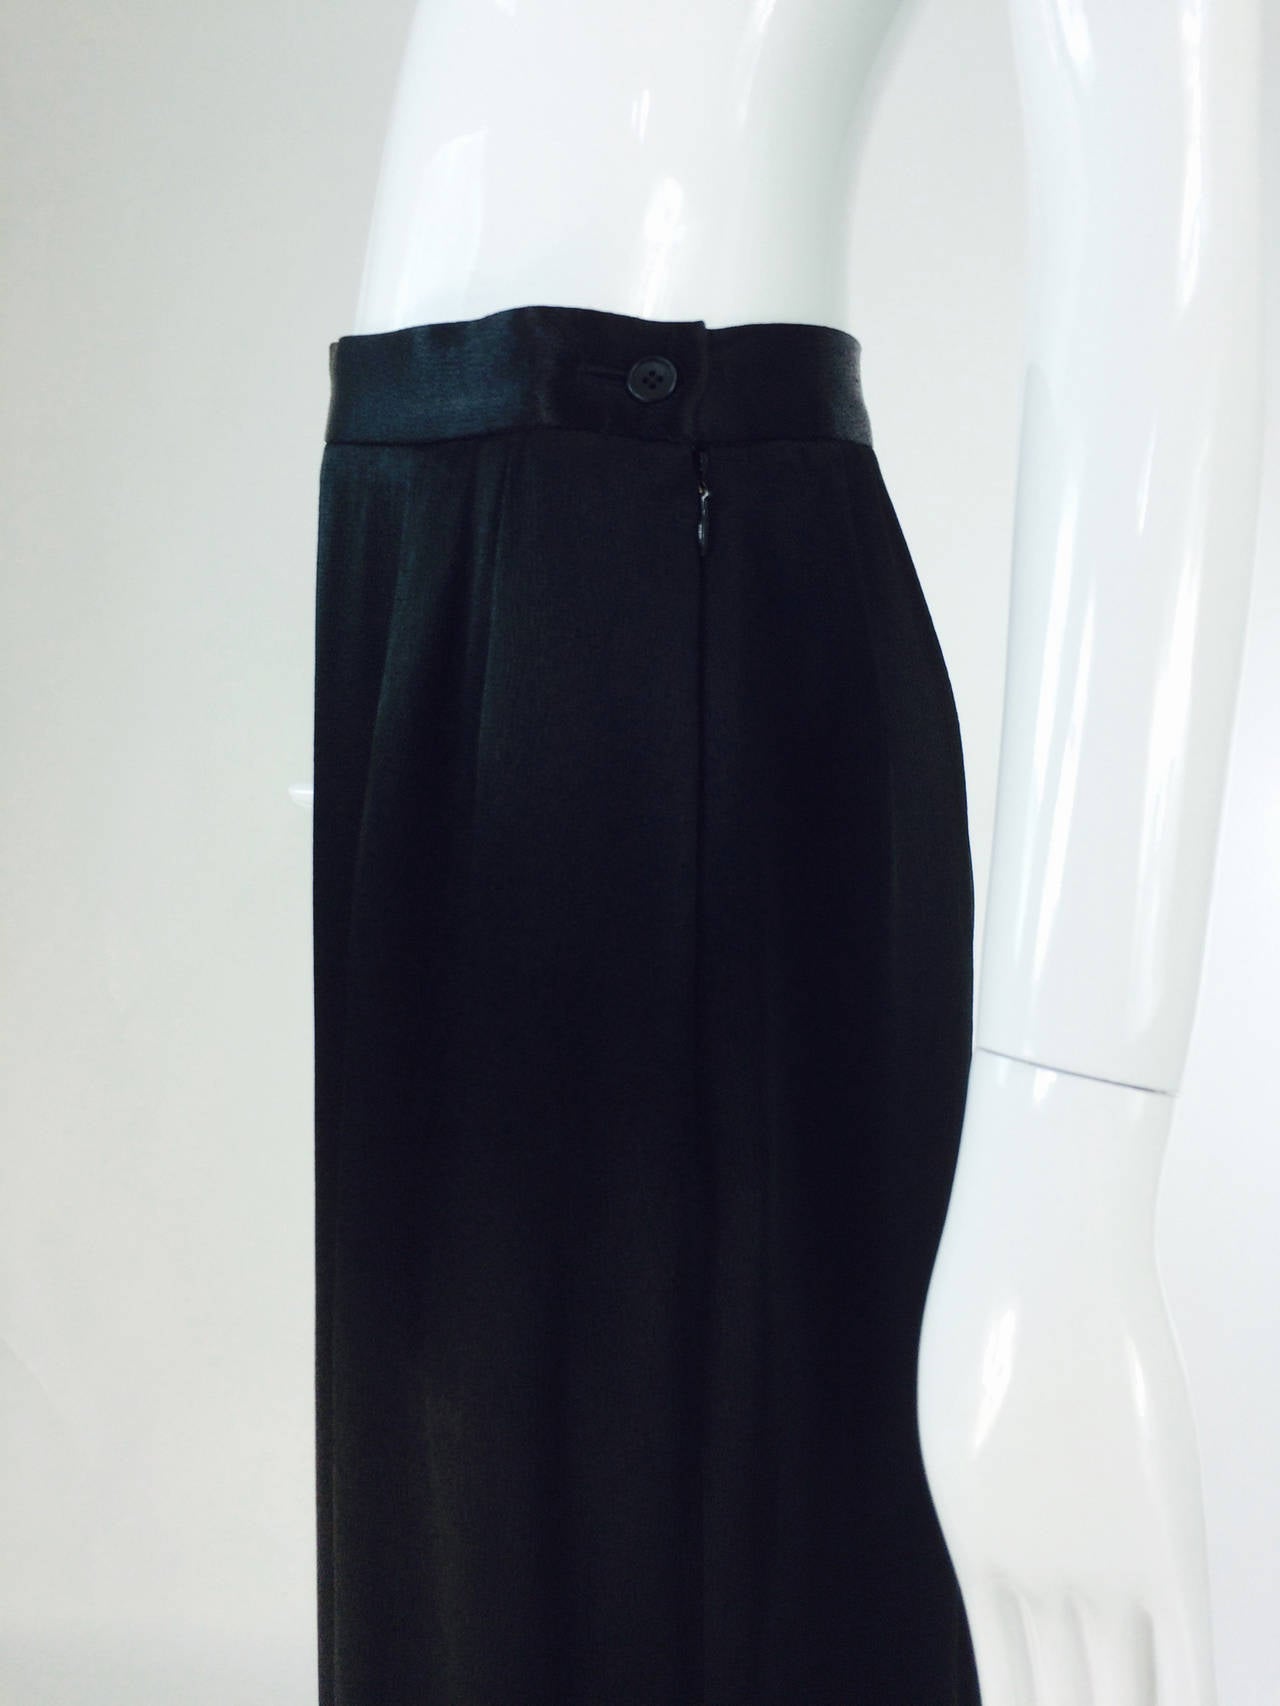 Women's Yves St Laurent Rive Gauche black hammered satin evening skirt